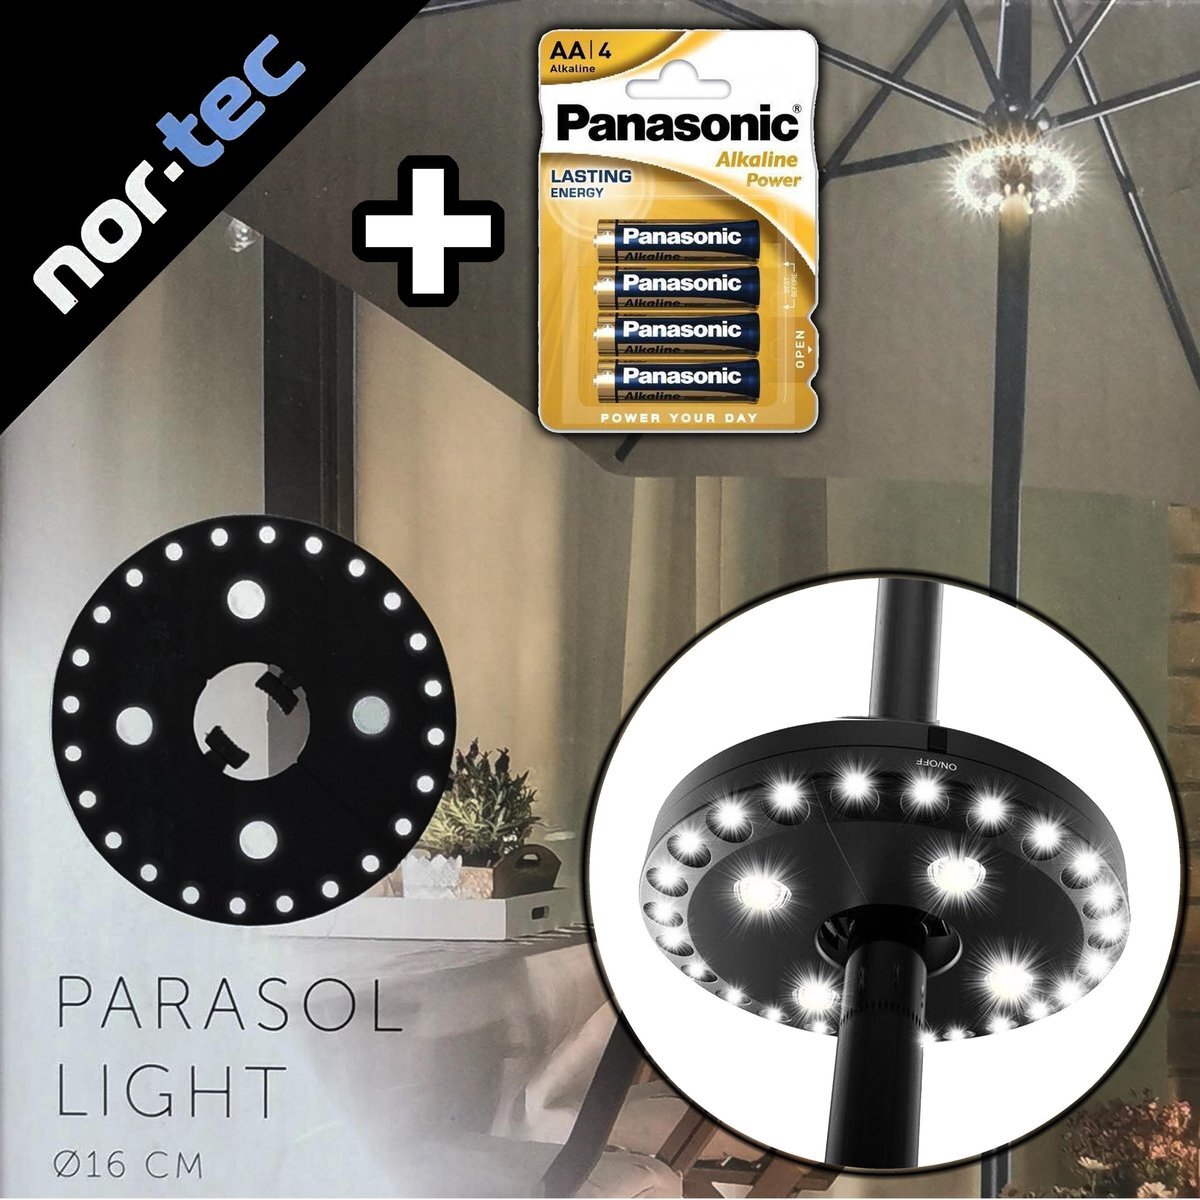 Nor Tec ? NOR-TEC LED Parasolverlichting INCLUSIEF 4 Batterijen | 3 Standen LED - Parasol - Lamp - Parasollamp - Parasolverlichting led - tuinparasol - warm licht - zomer - warmte - zon - verlichting - zonneparasol - universeel - kampeerlamp - campinglamp